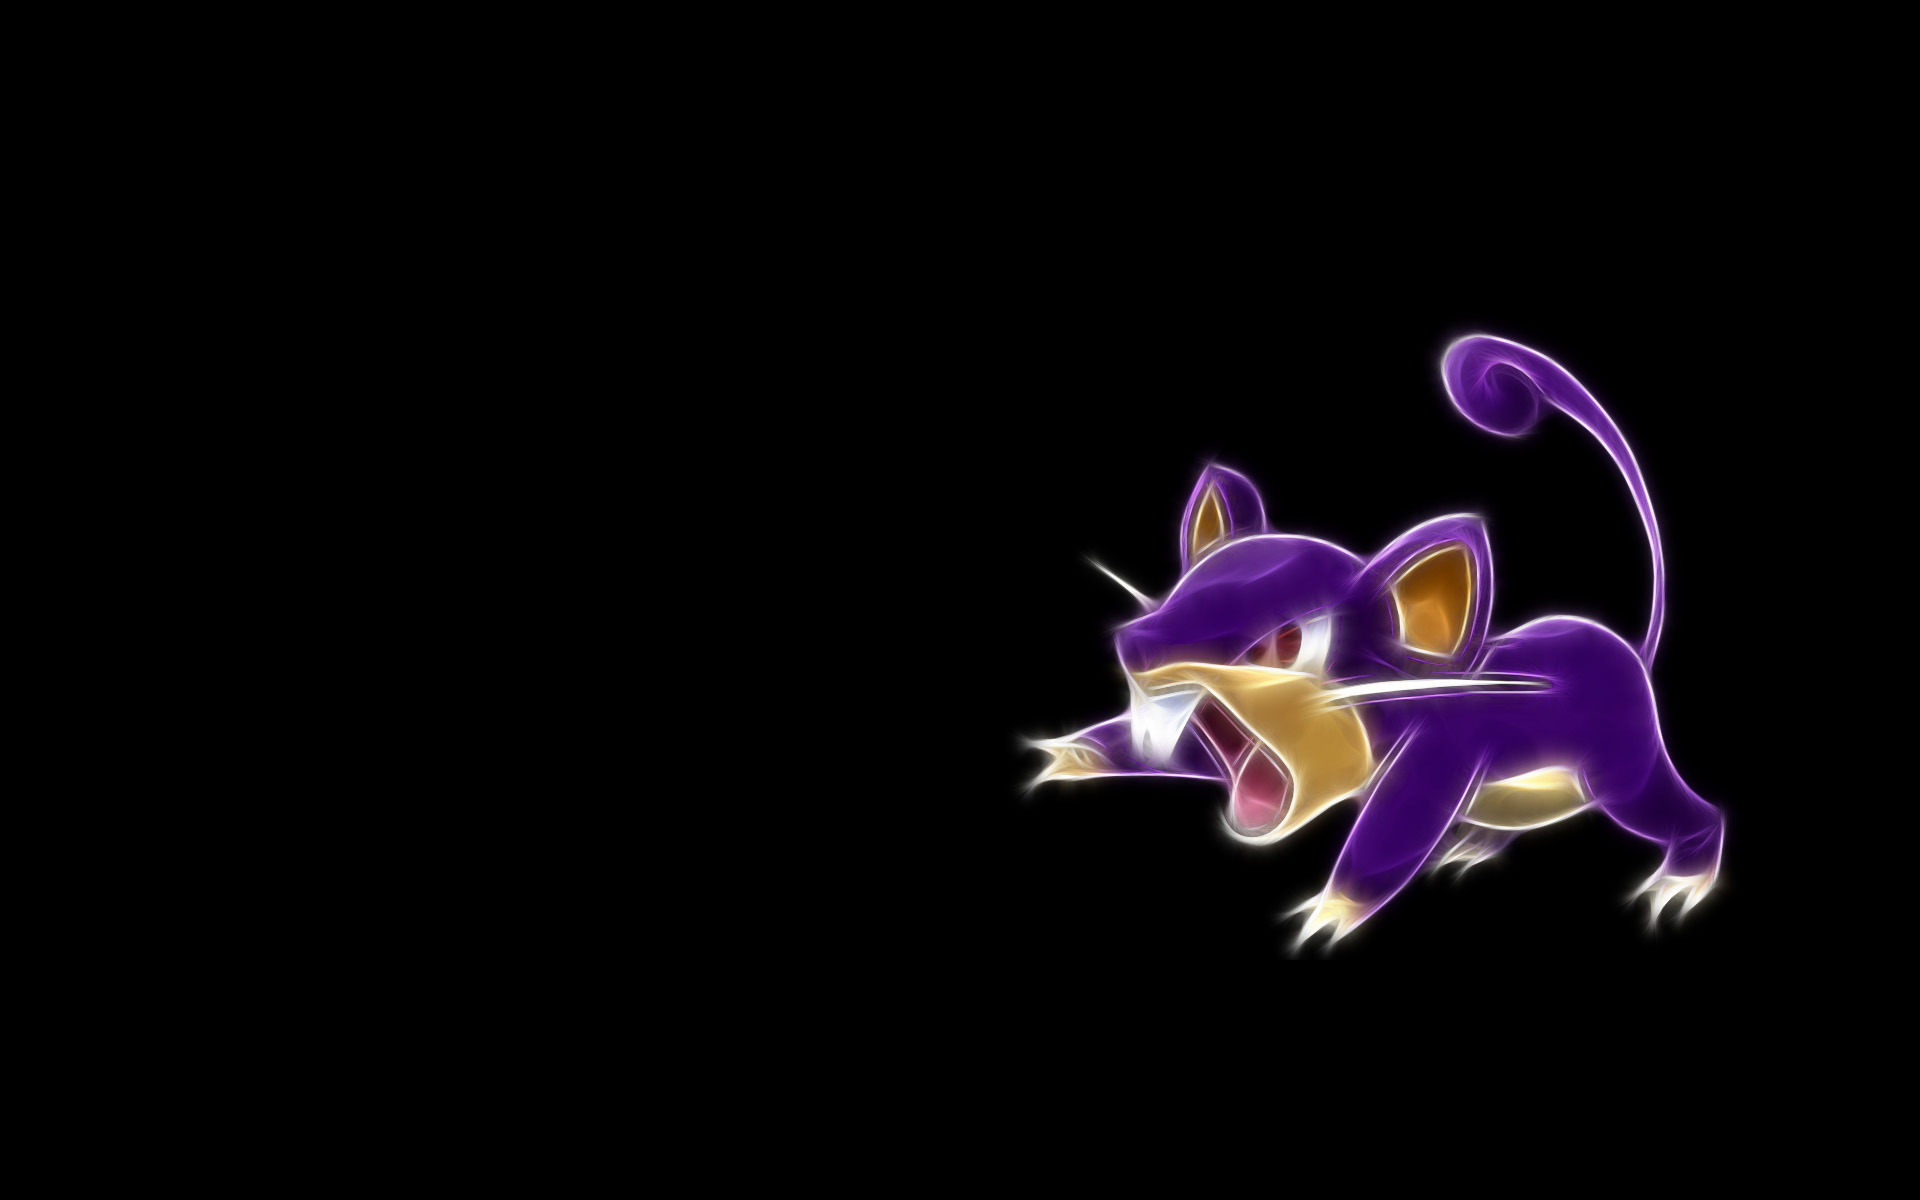 Descargar fondos de escritorio de Rattata (Pokémon) HD